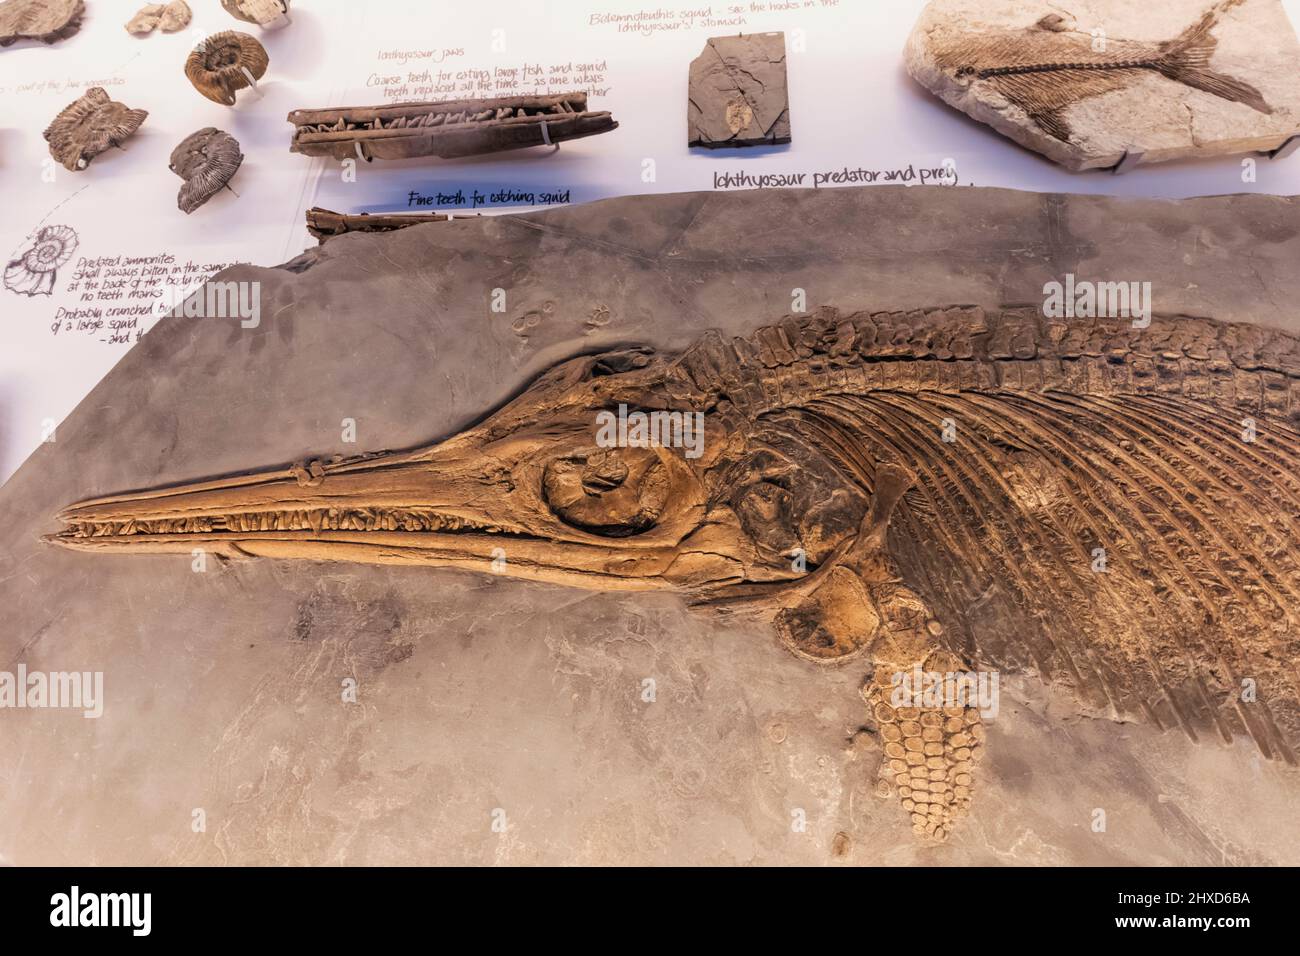 Inglaterra, Dorset, Kimmeridge, The Etches Collection Museum of Jurassic Marine Life, exposición de un esqueleto fosilizado de ictiosaurio Foto de stock